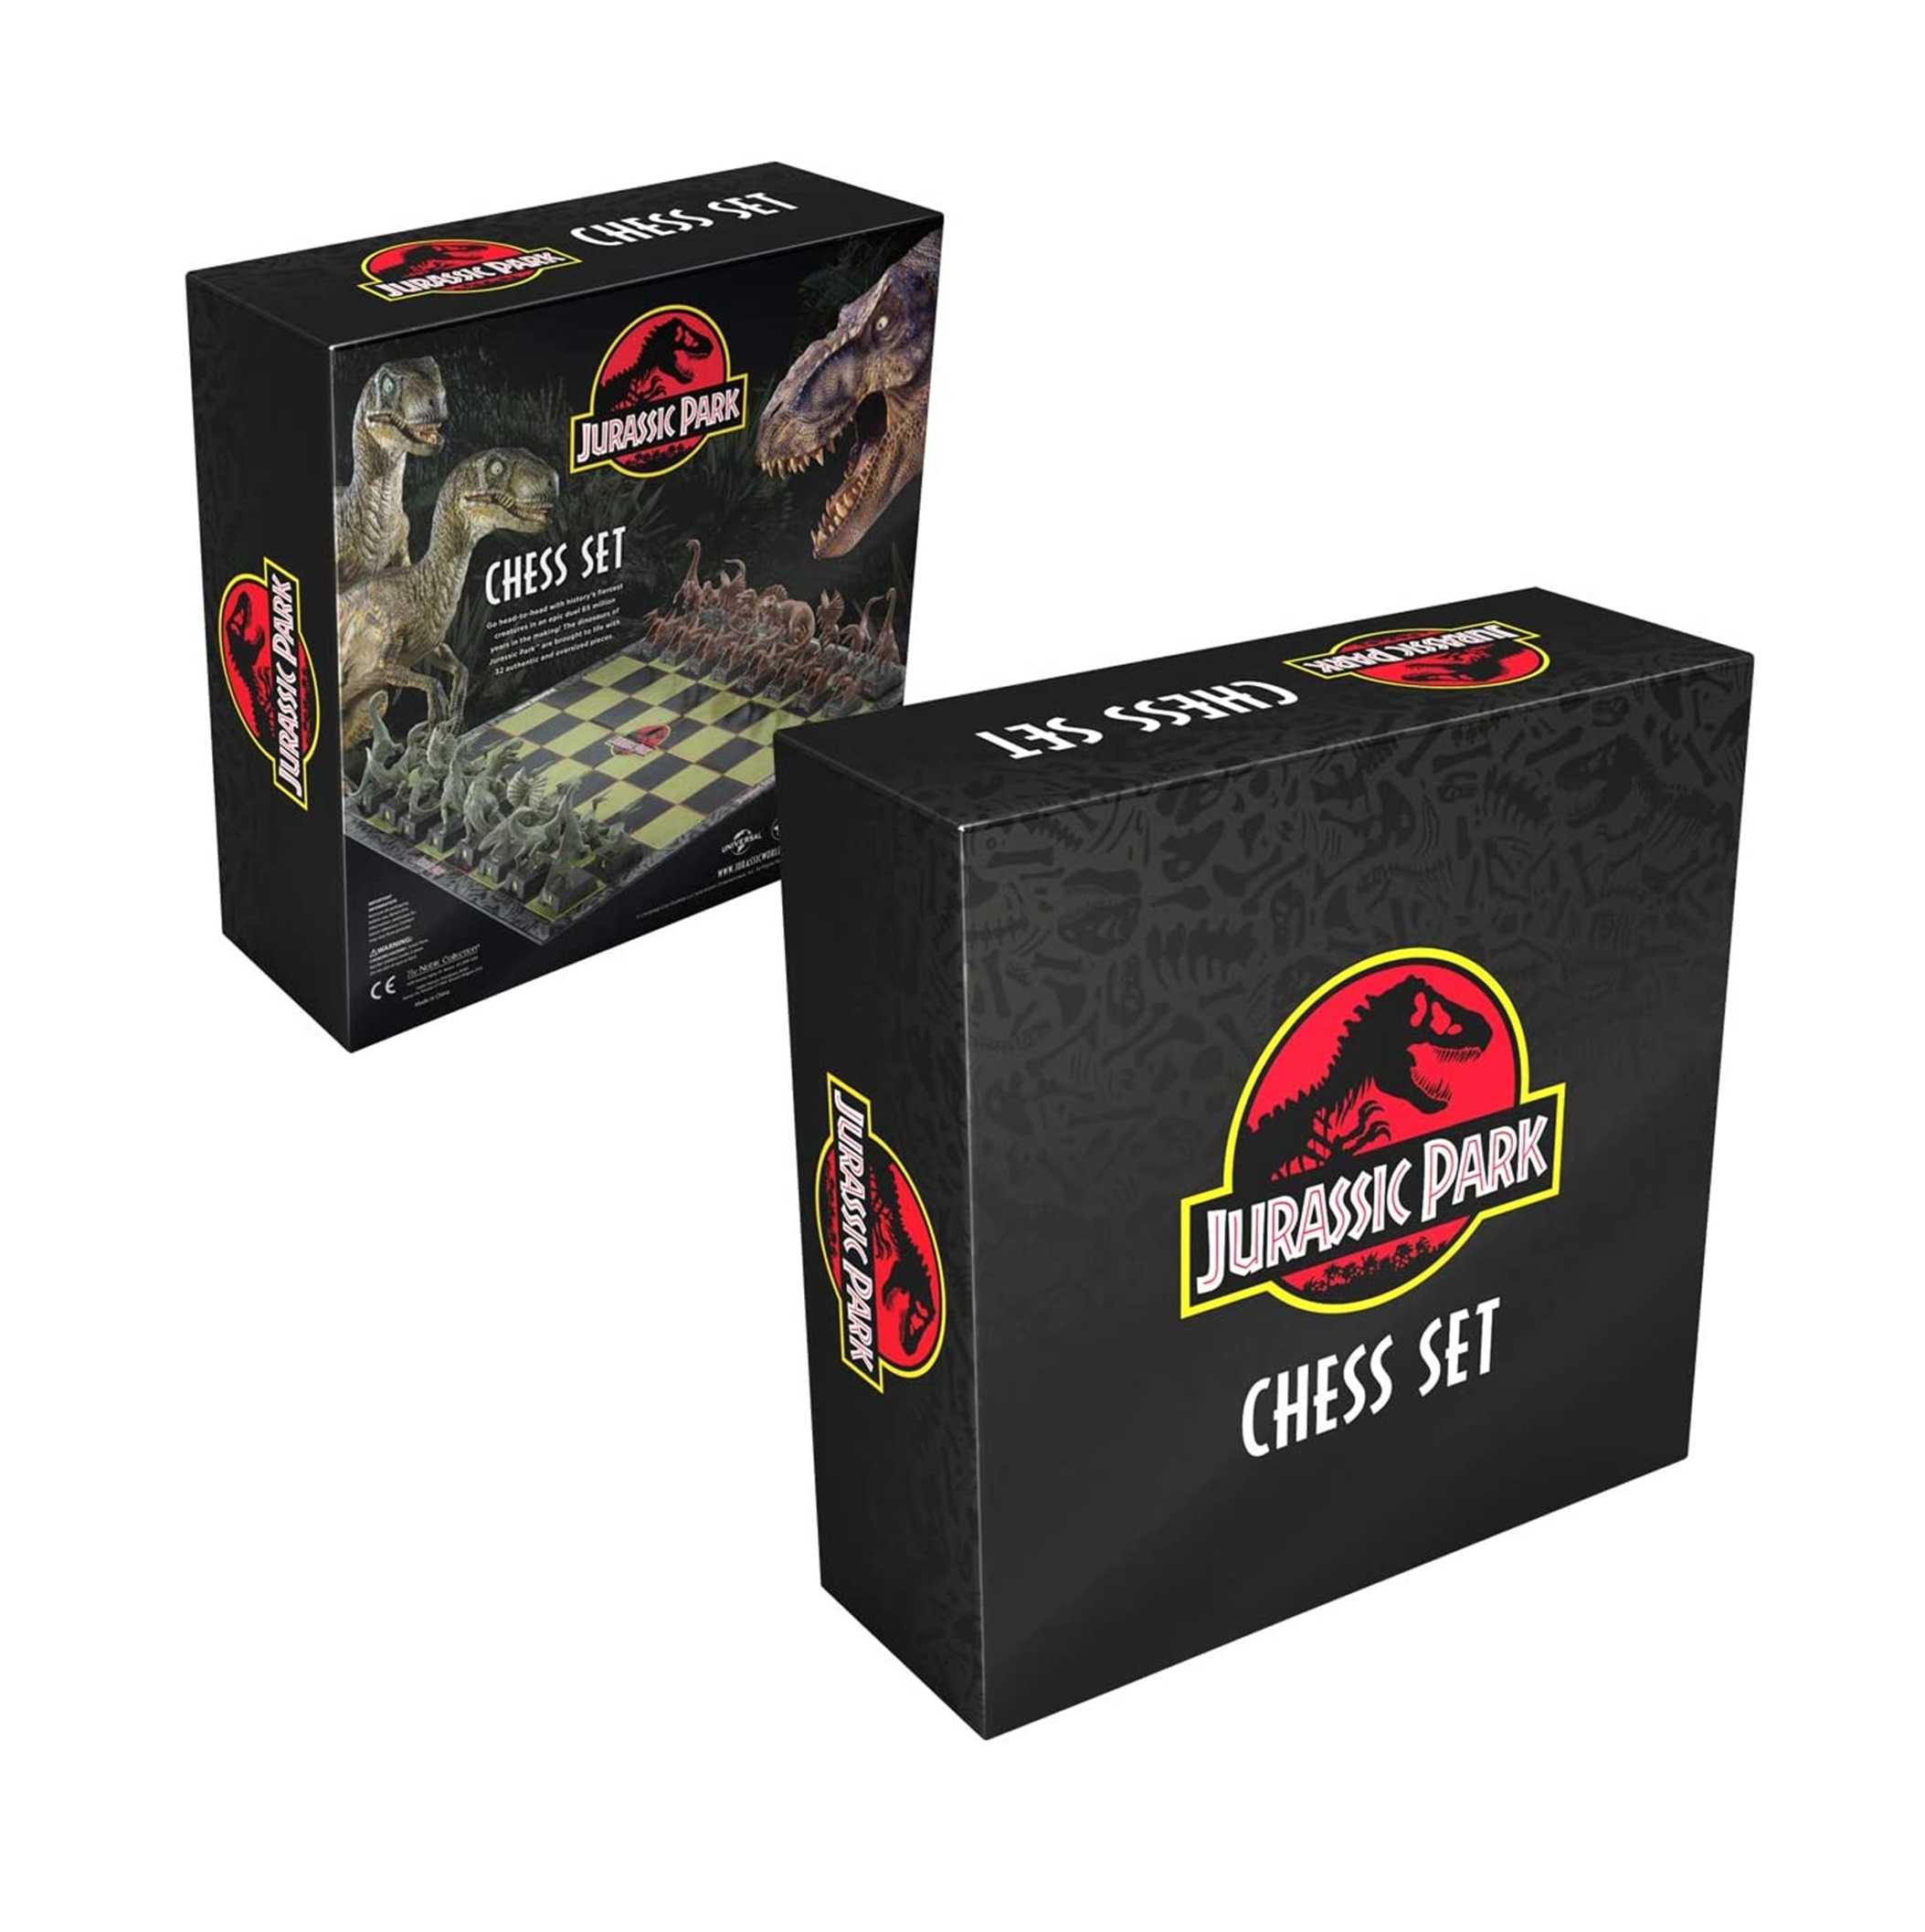 Schachspiel Jurassic Park NOBLE THE schwarz COLLECTION